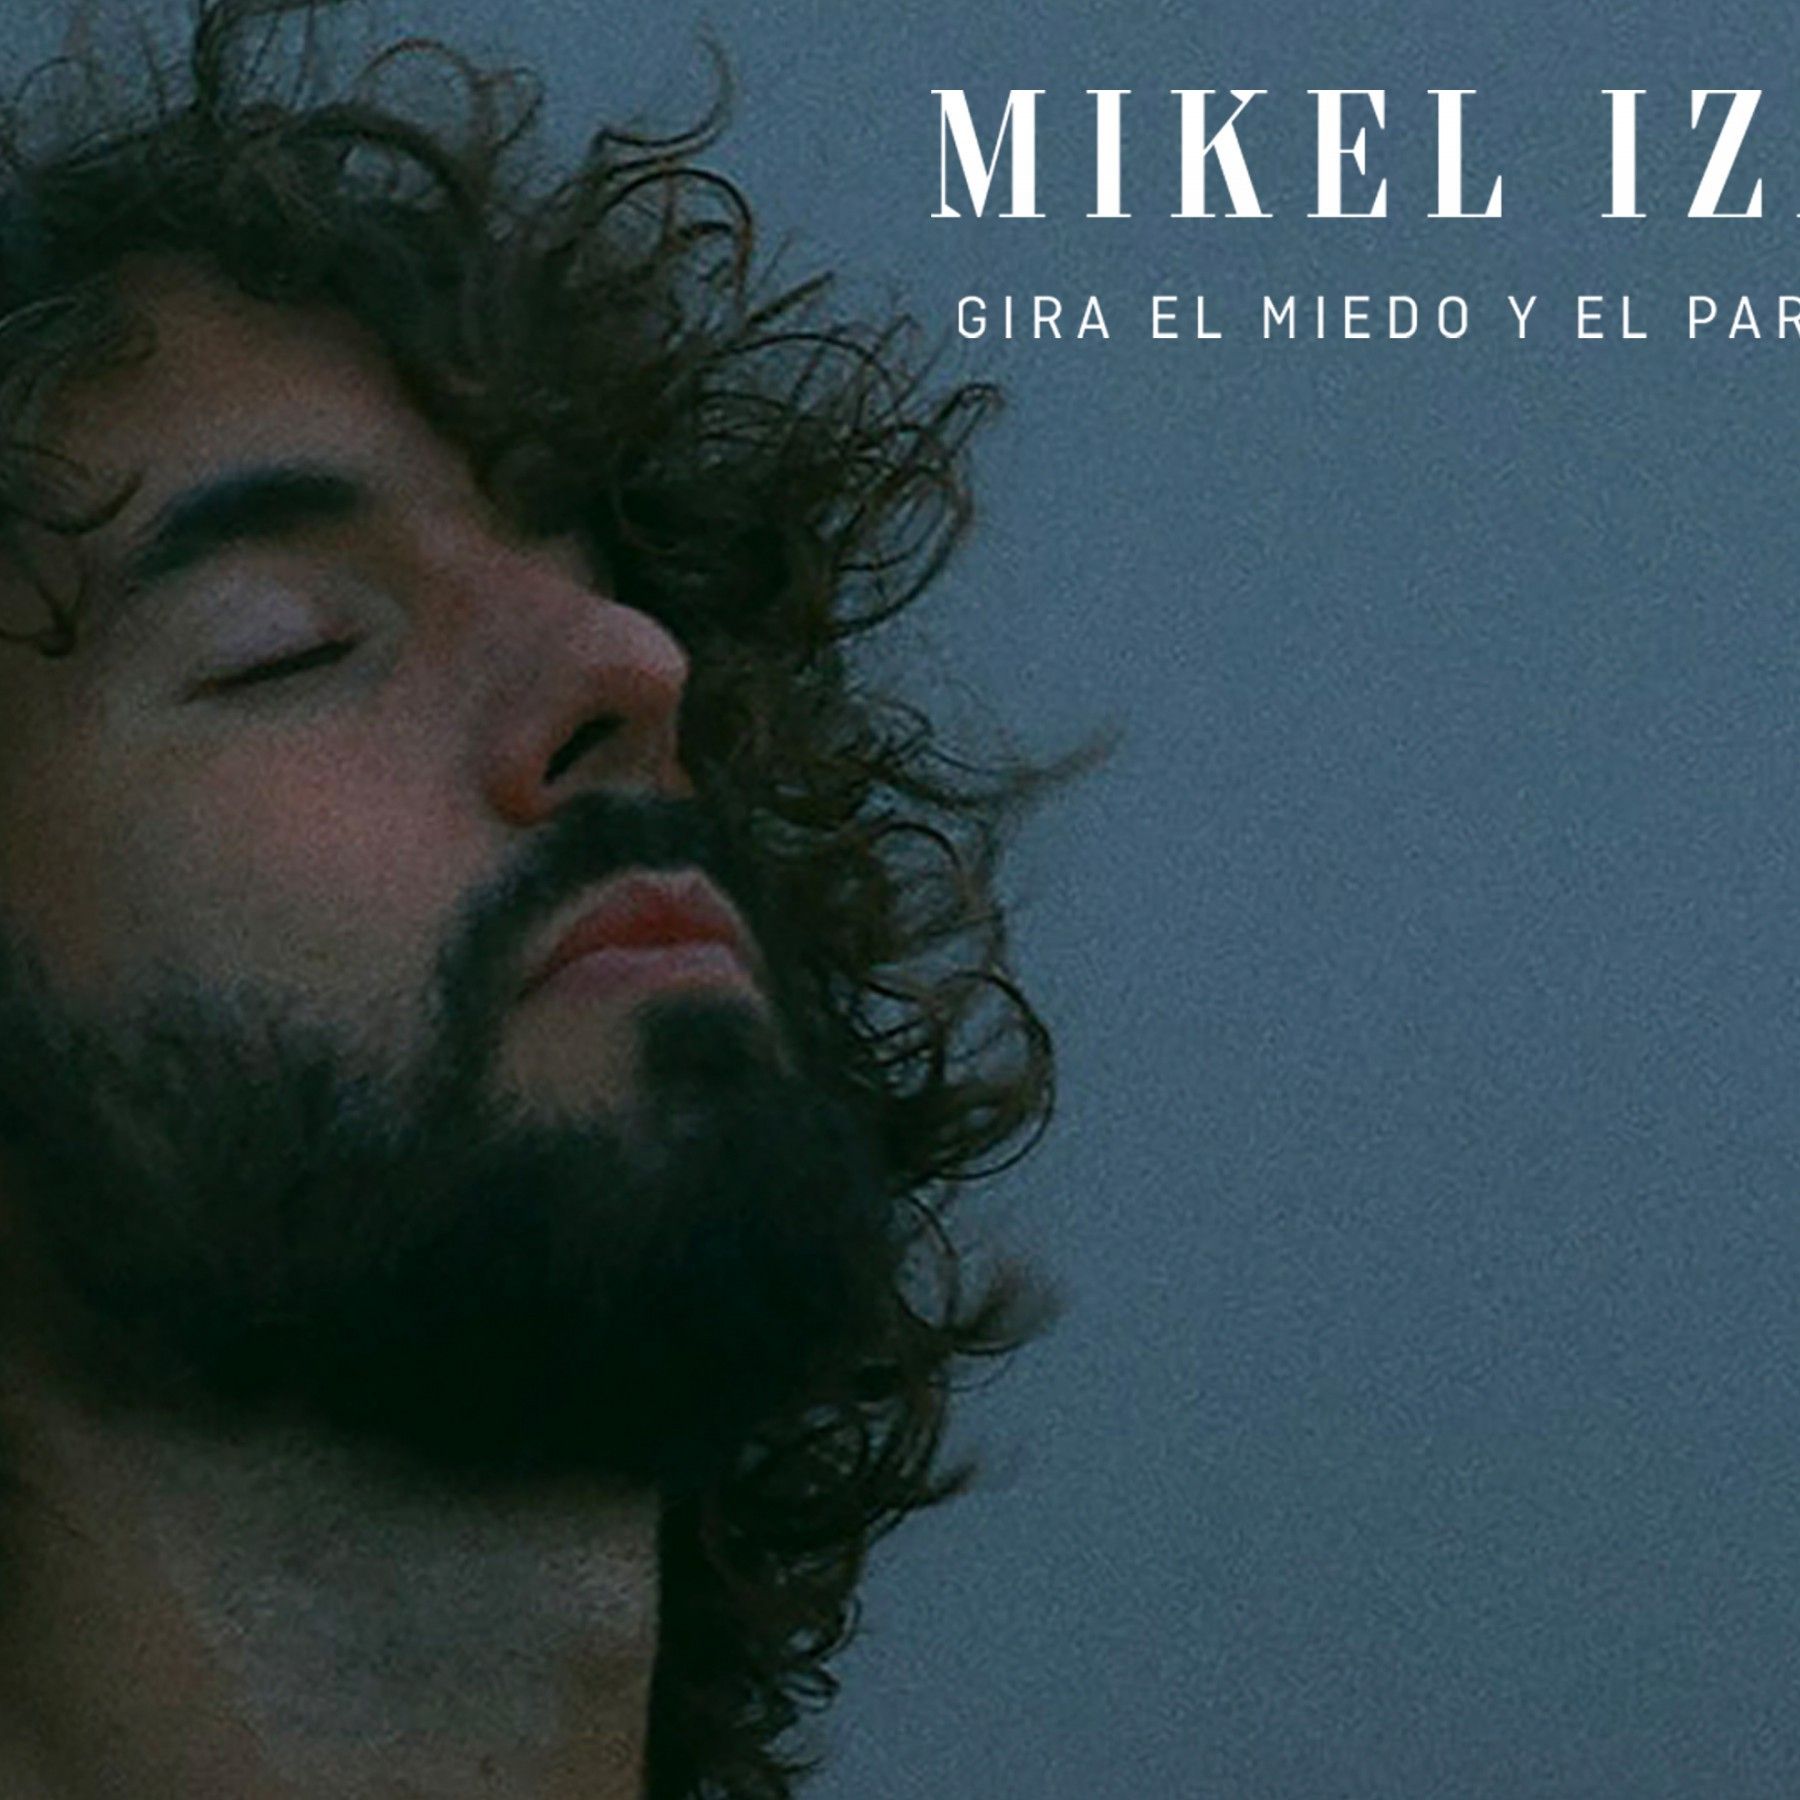 Concierto de Mikel Izal en Illescas.